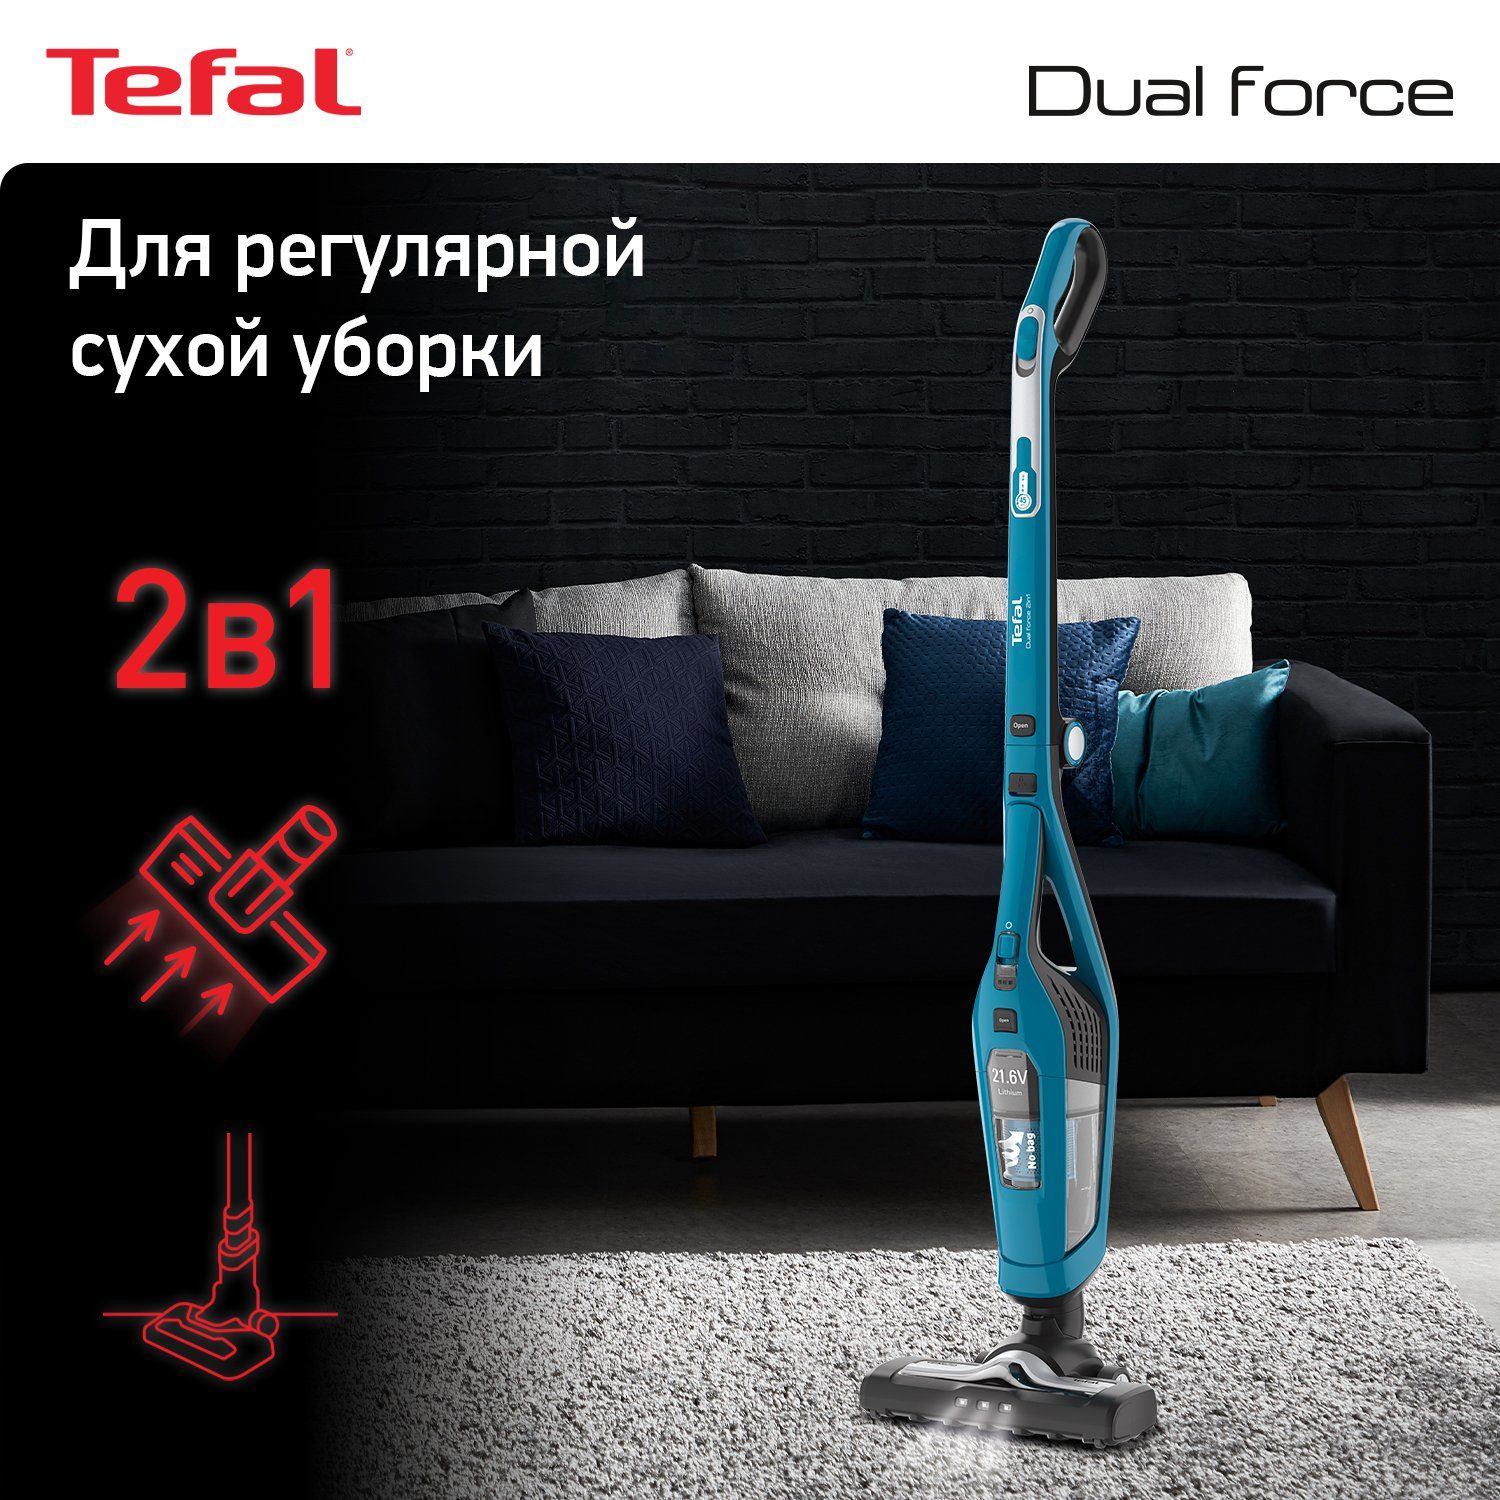 Вертикальный пылесос Tefal Dual Force 2 в 1 TY6751 Blue/Black, купить в Москве, цены в интернет-магазинах на Мегамаркет